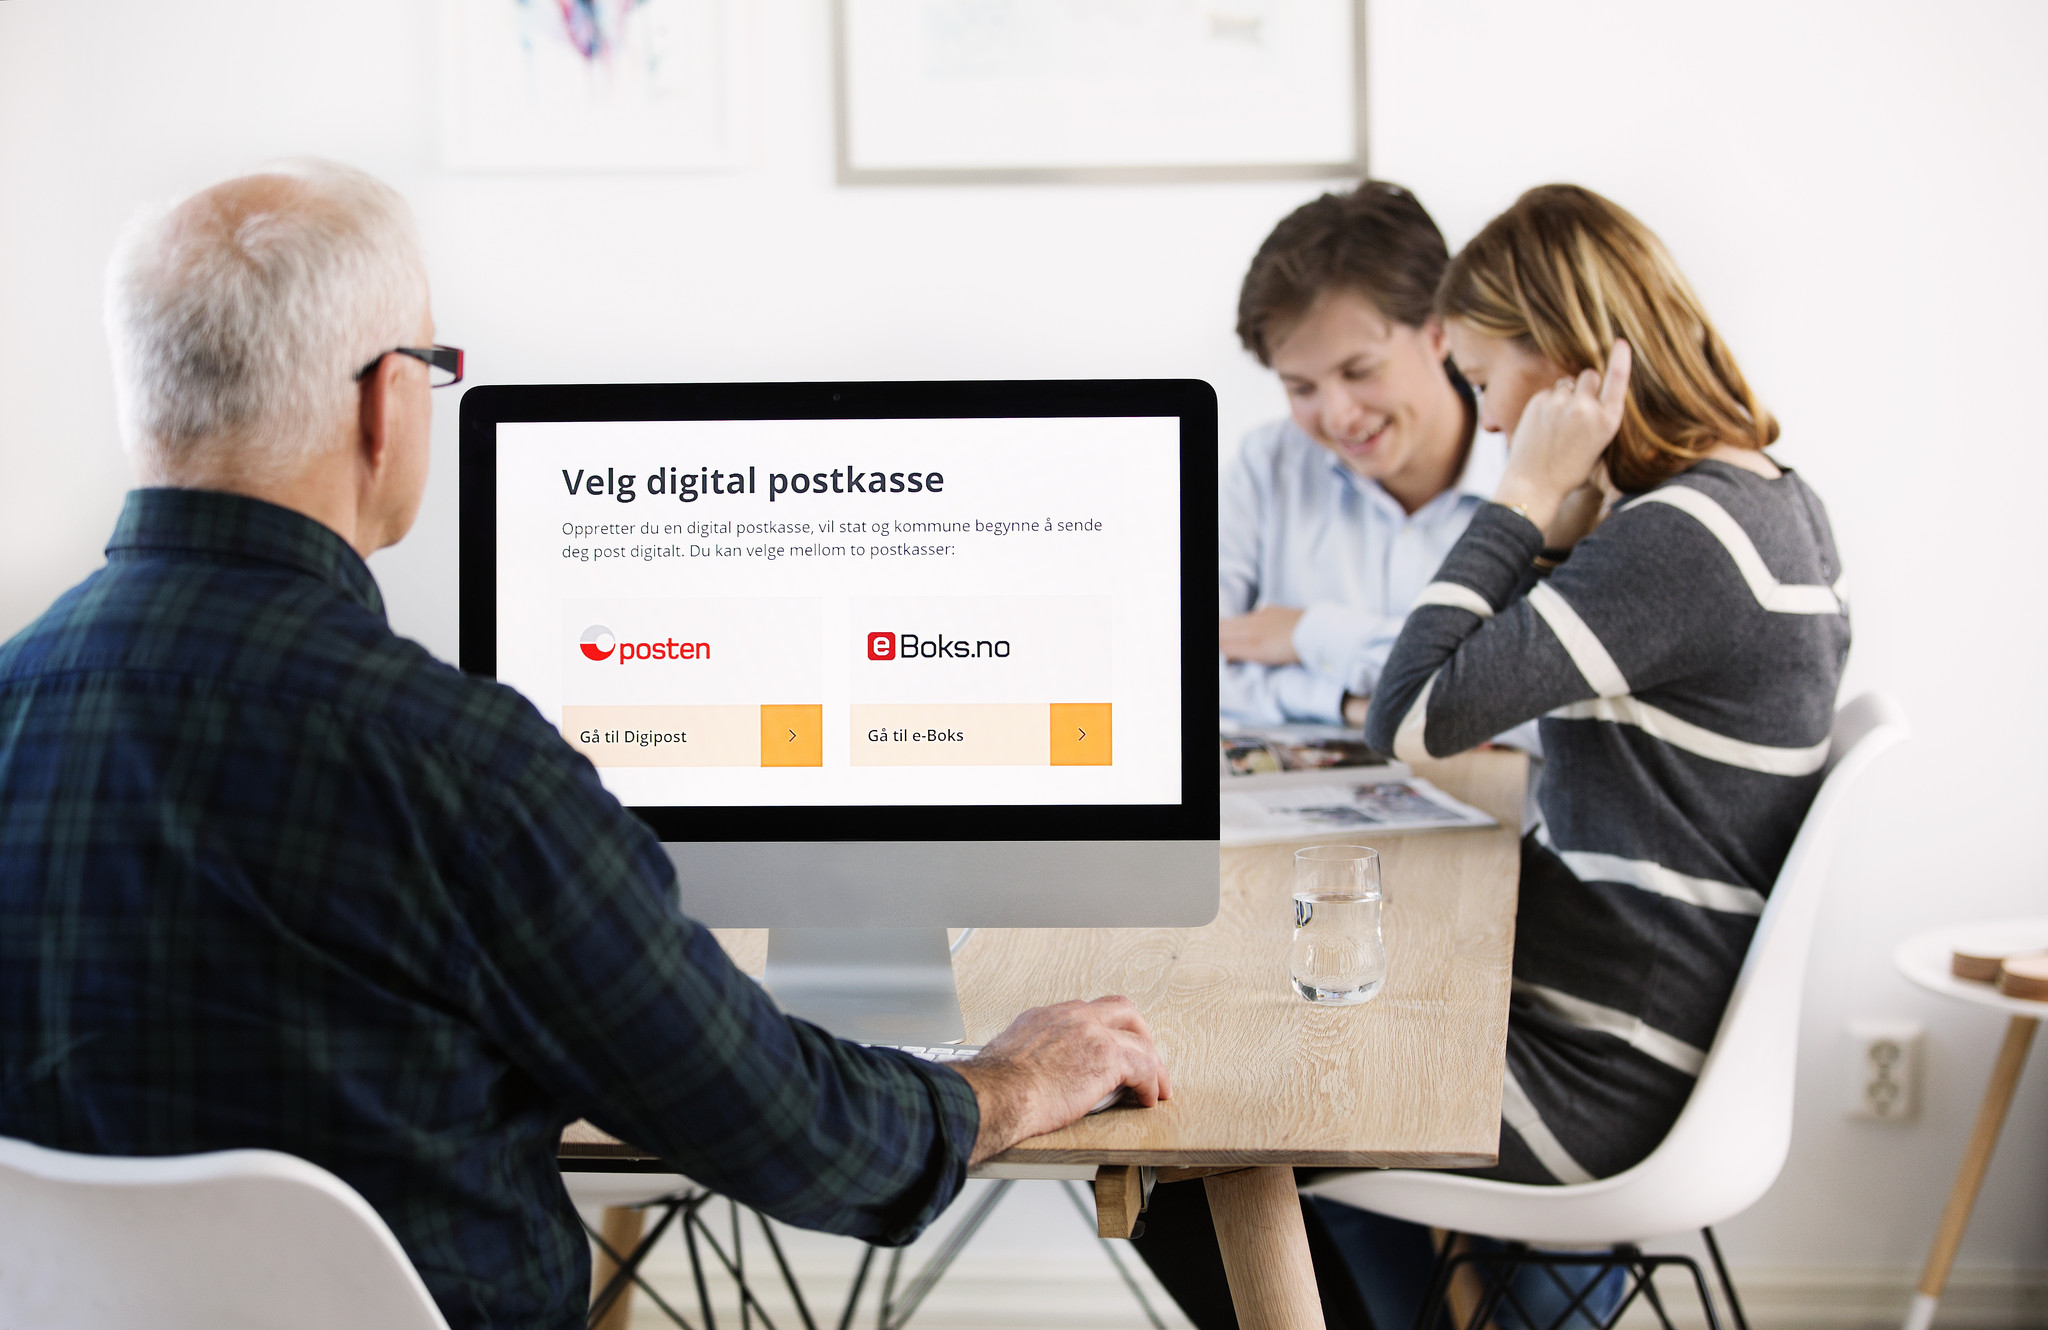 Velg din digitale postkasse på www.norge.no